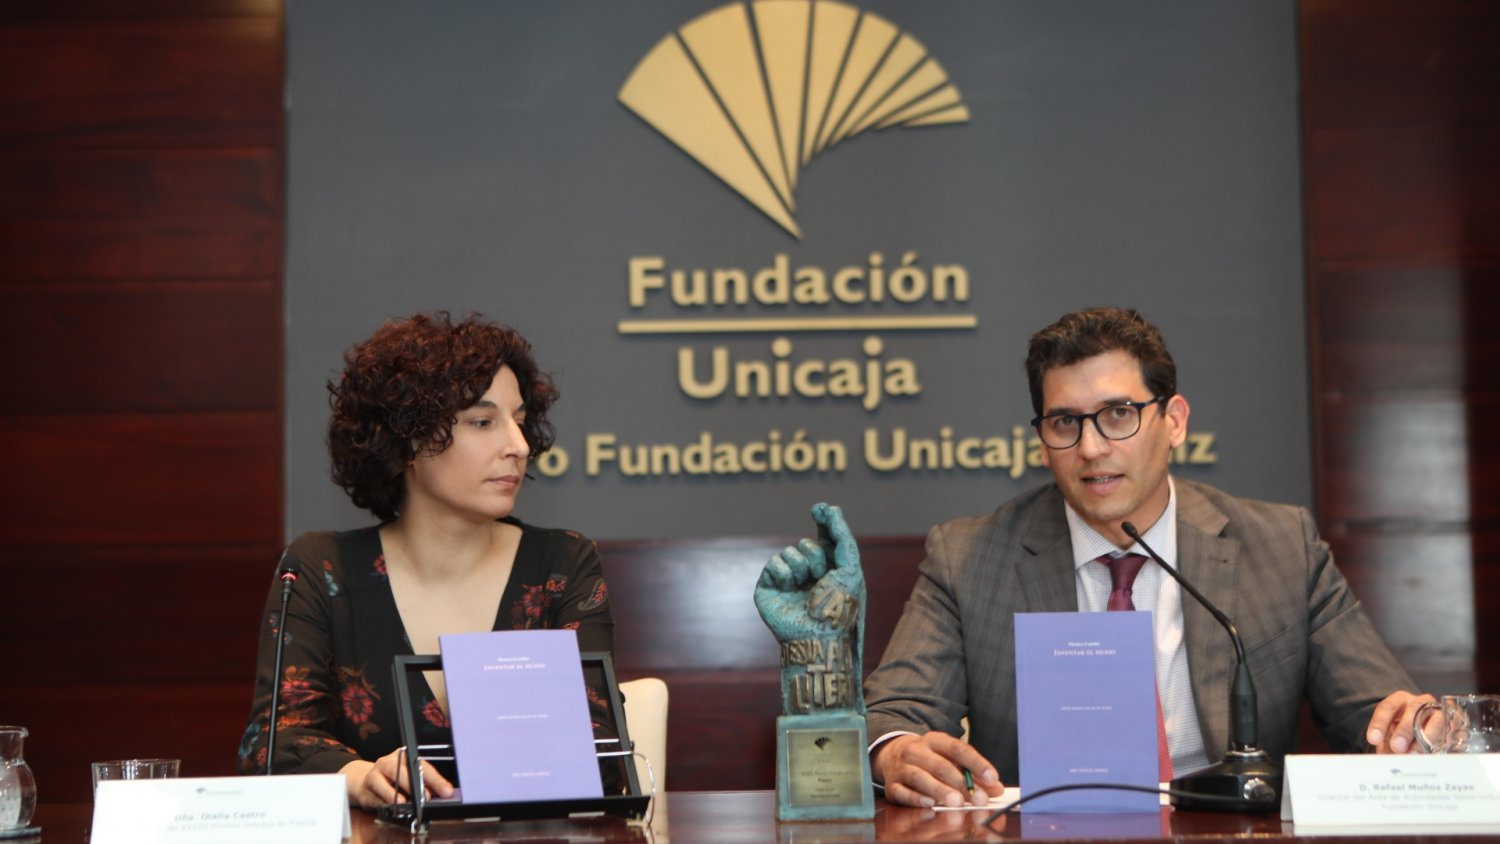 Fundación Unicaja entrega el XXXIII Premio Unicaja de Poesía a Olalla Castro y convoca la XXXIV edición